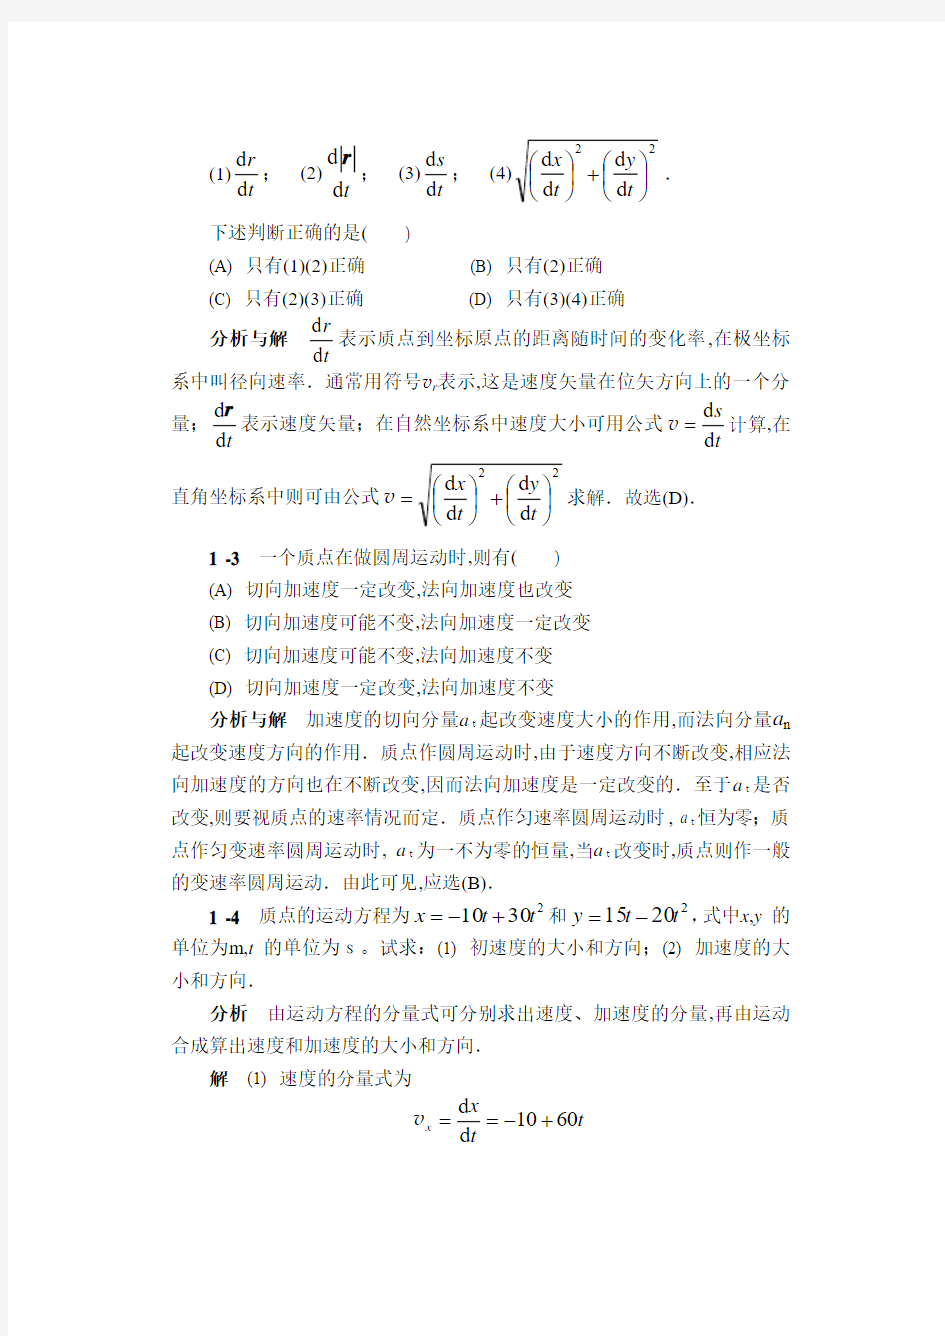 华南农业大学物理学简明教程课后习题答案解剖